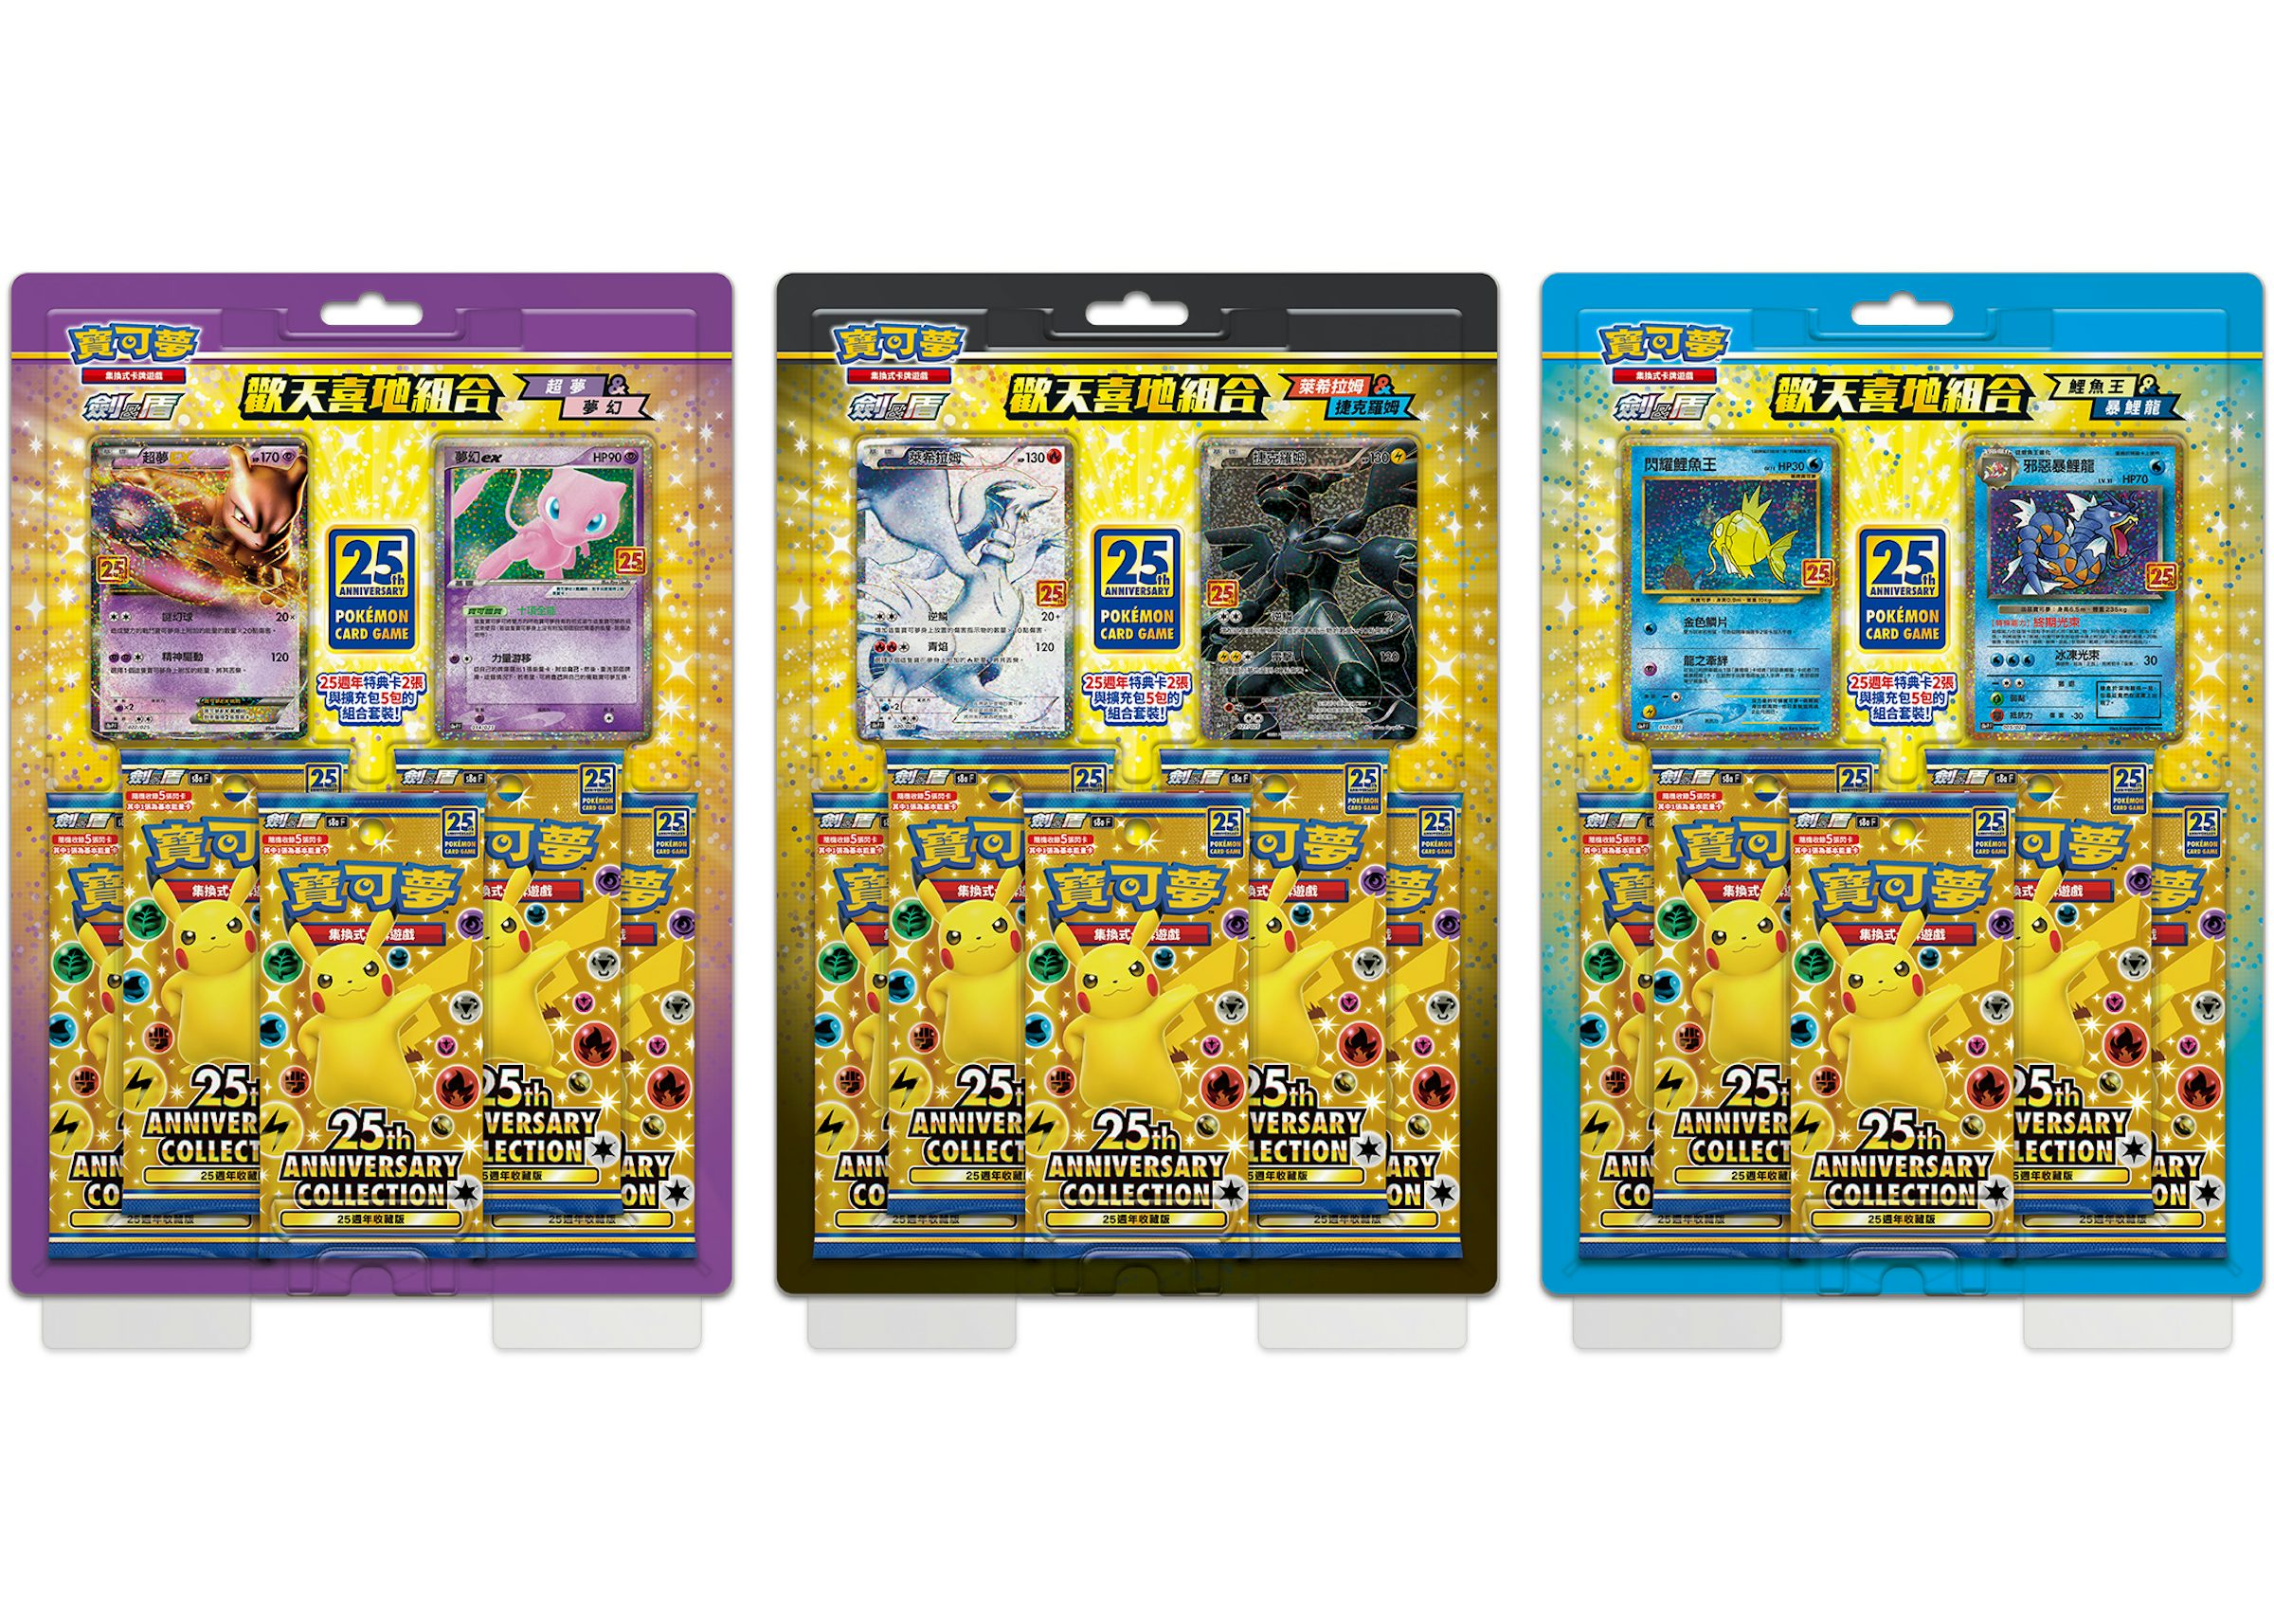 Mewtwo & Mew Pokémon Pins (2-Pack)